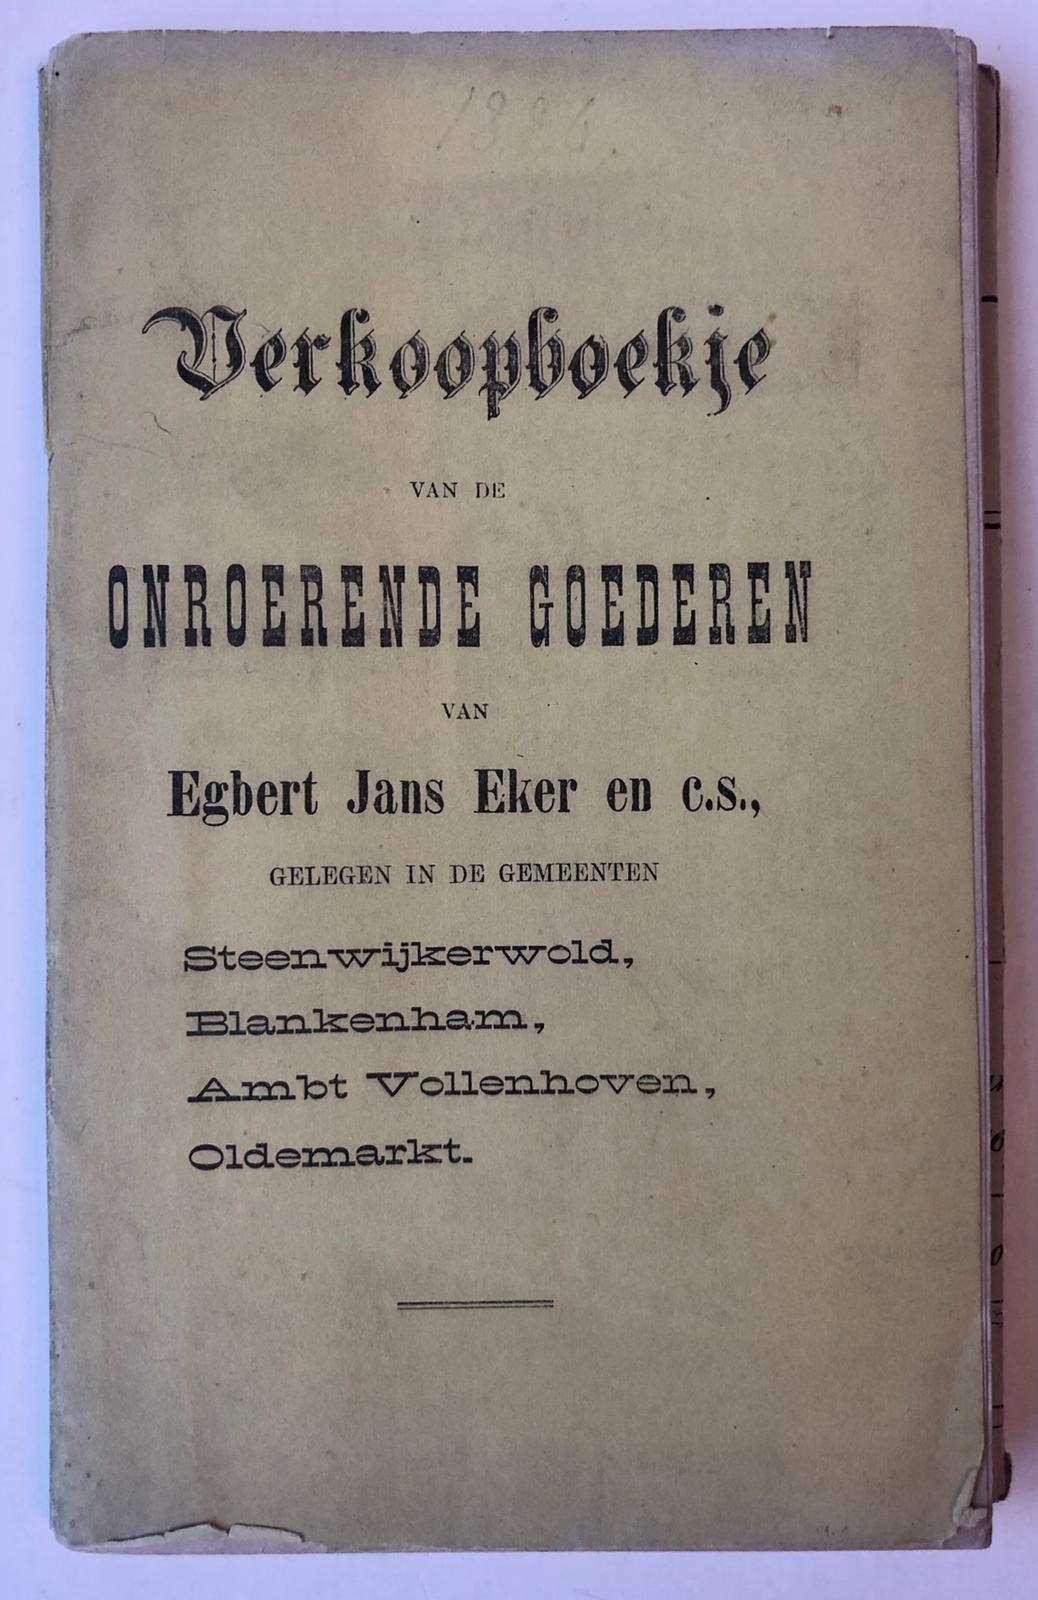 [VEILINGBOEKJE ONROEREND GOED] - [Veilingboekje betreffende onroerend goed Steenwijkerwold, Blankenham, Ambt Vollenhoven, Oldemarkt, Overijssel] Verkoopboekje van onroerende goederen, te o.a. Steenwijkerwold, Notaris W. Huender te Steenwijk, G. Hovens Grve, Steenwijk 1886, 71 pp.